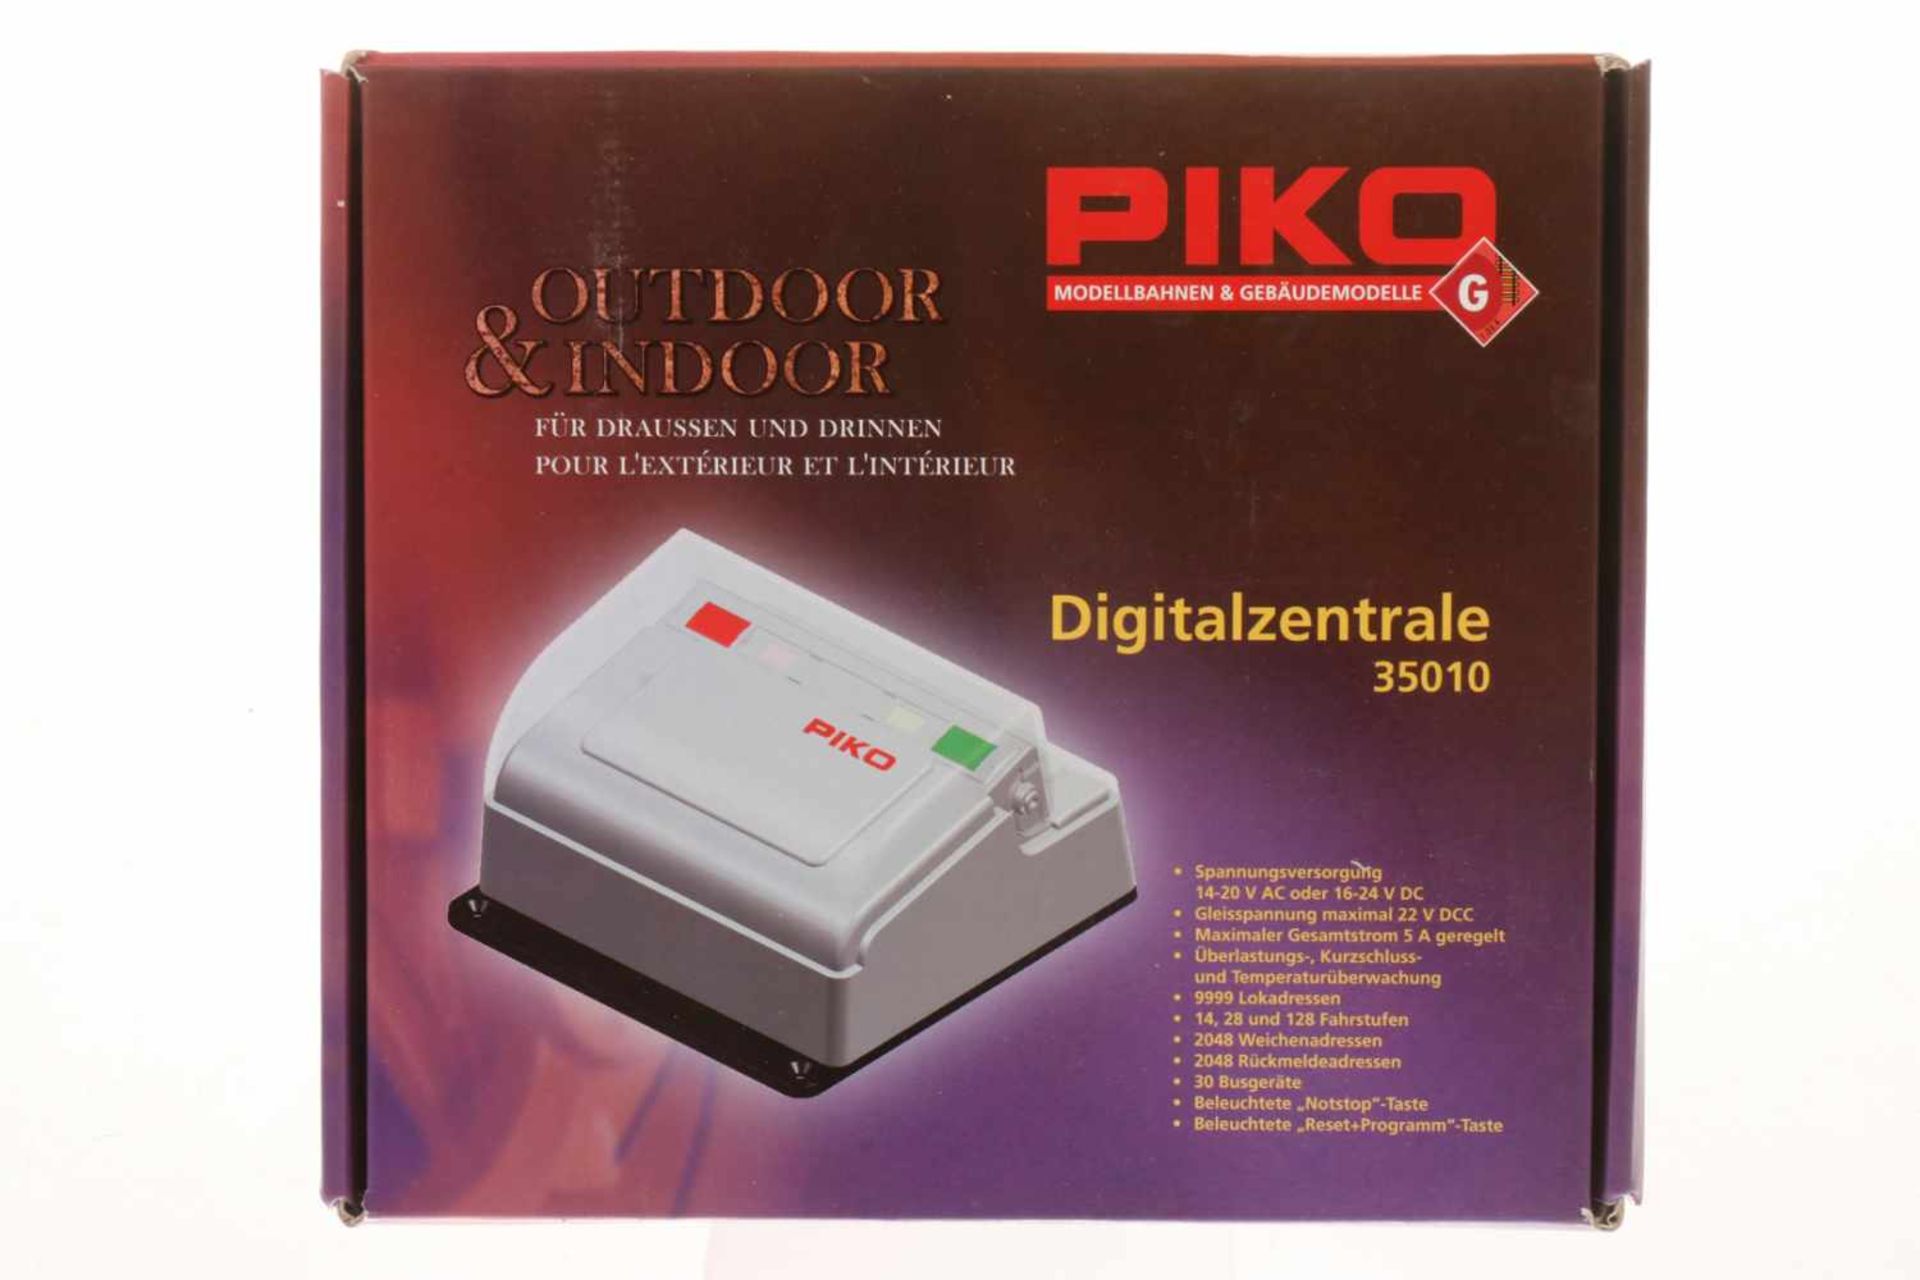 Piko Digitalzentrale 35010, OK leicht besch., Z 1-2